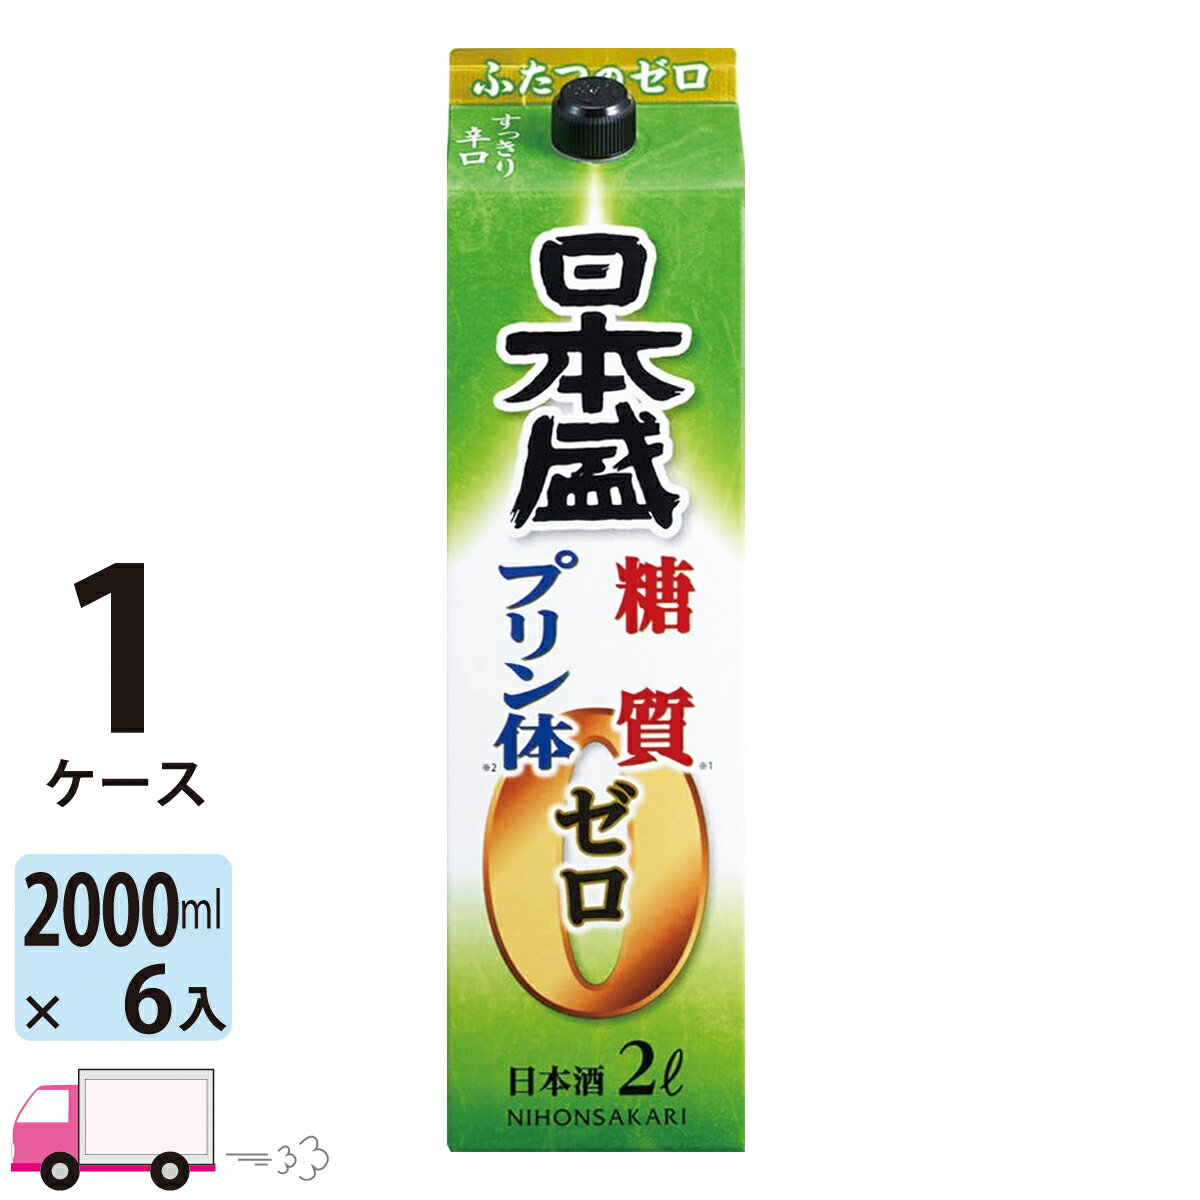 【送料無料※一部地域除く】 日本盛 糖質ゼロプリン体ゼロ 日本酒 パック 2000ml 6本 1ケース